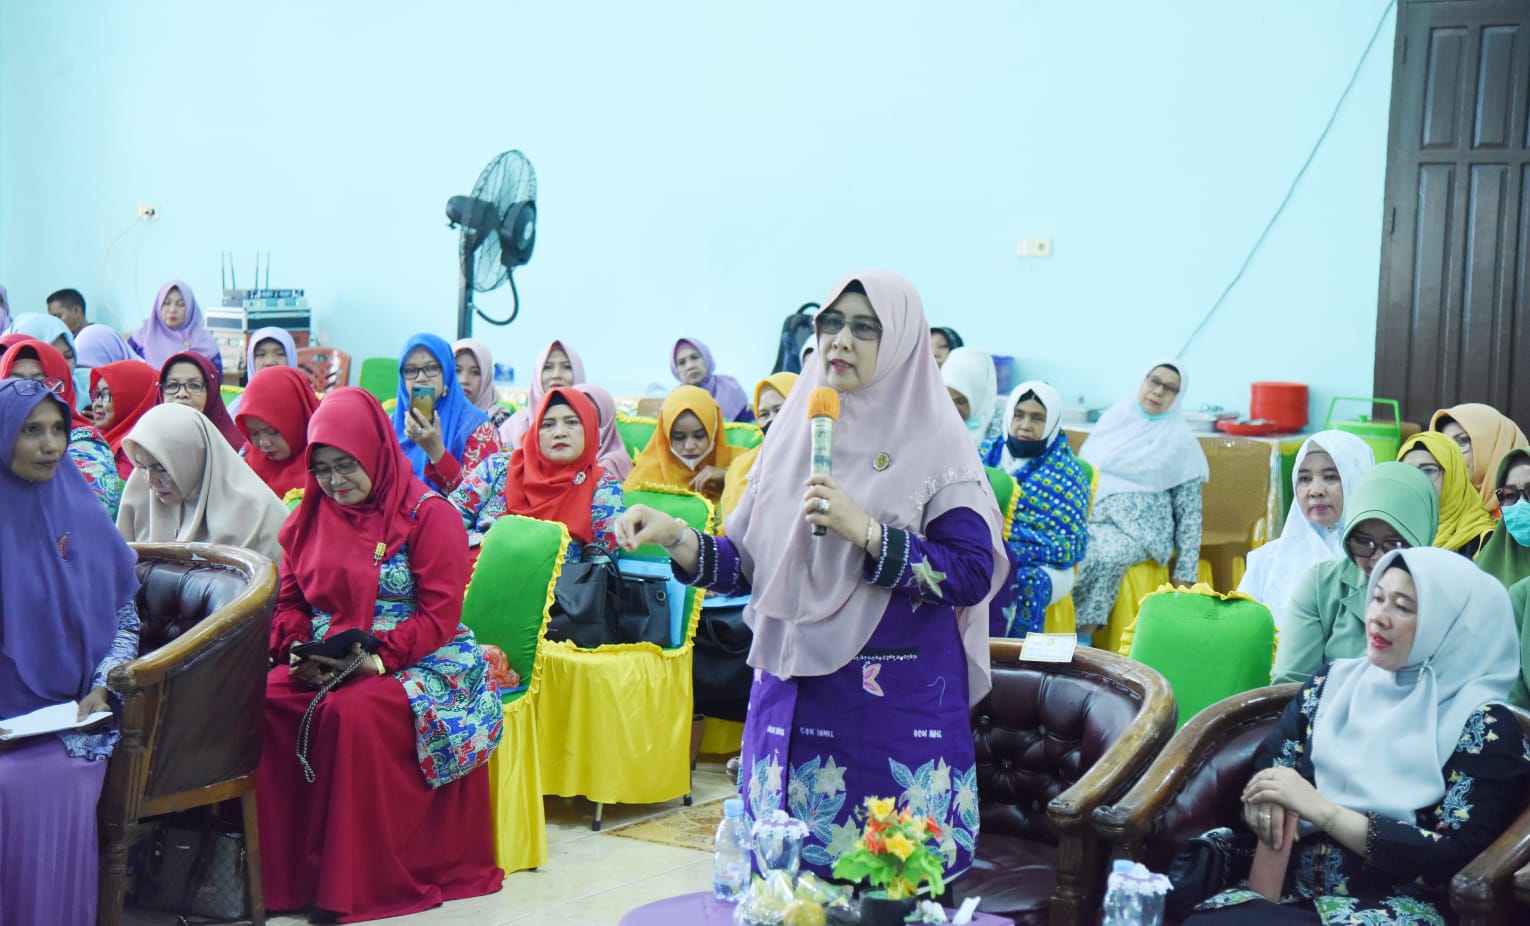 GOW Taja Pelatihan, Ketua Dewan Penasehat Hj Zulaikhah: Penting Bagi Wanita Tingkatkan Kualitas Diri